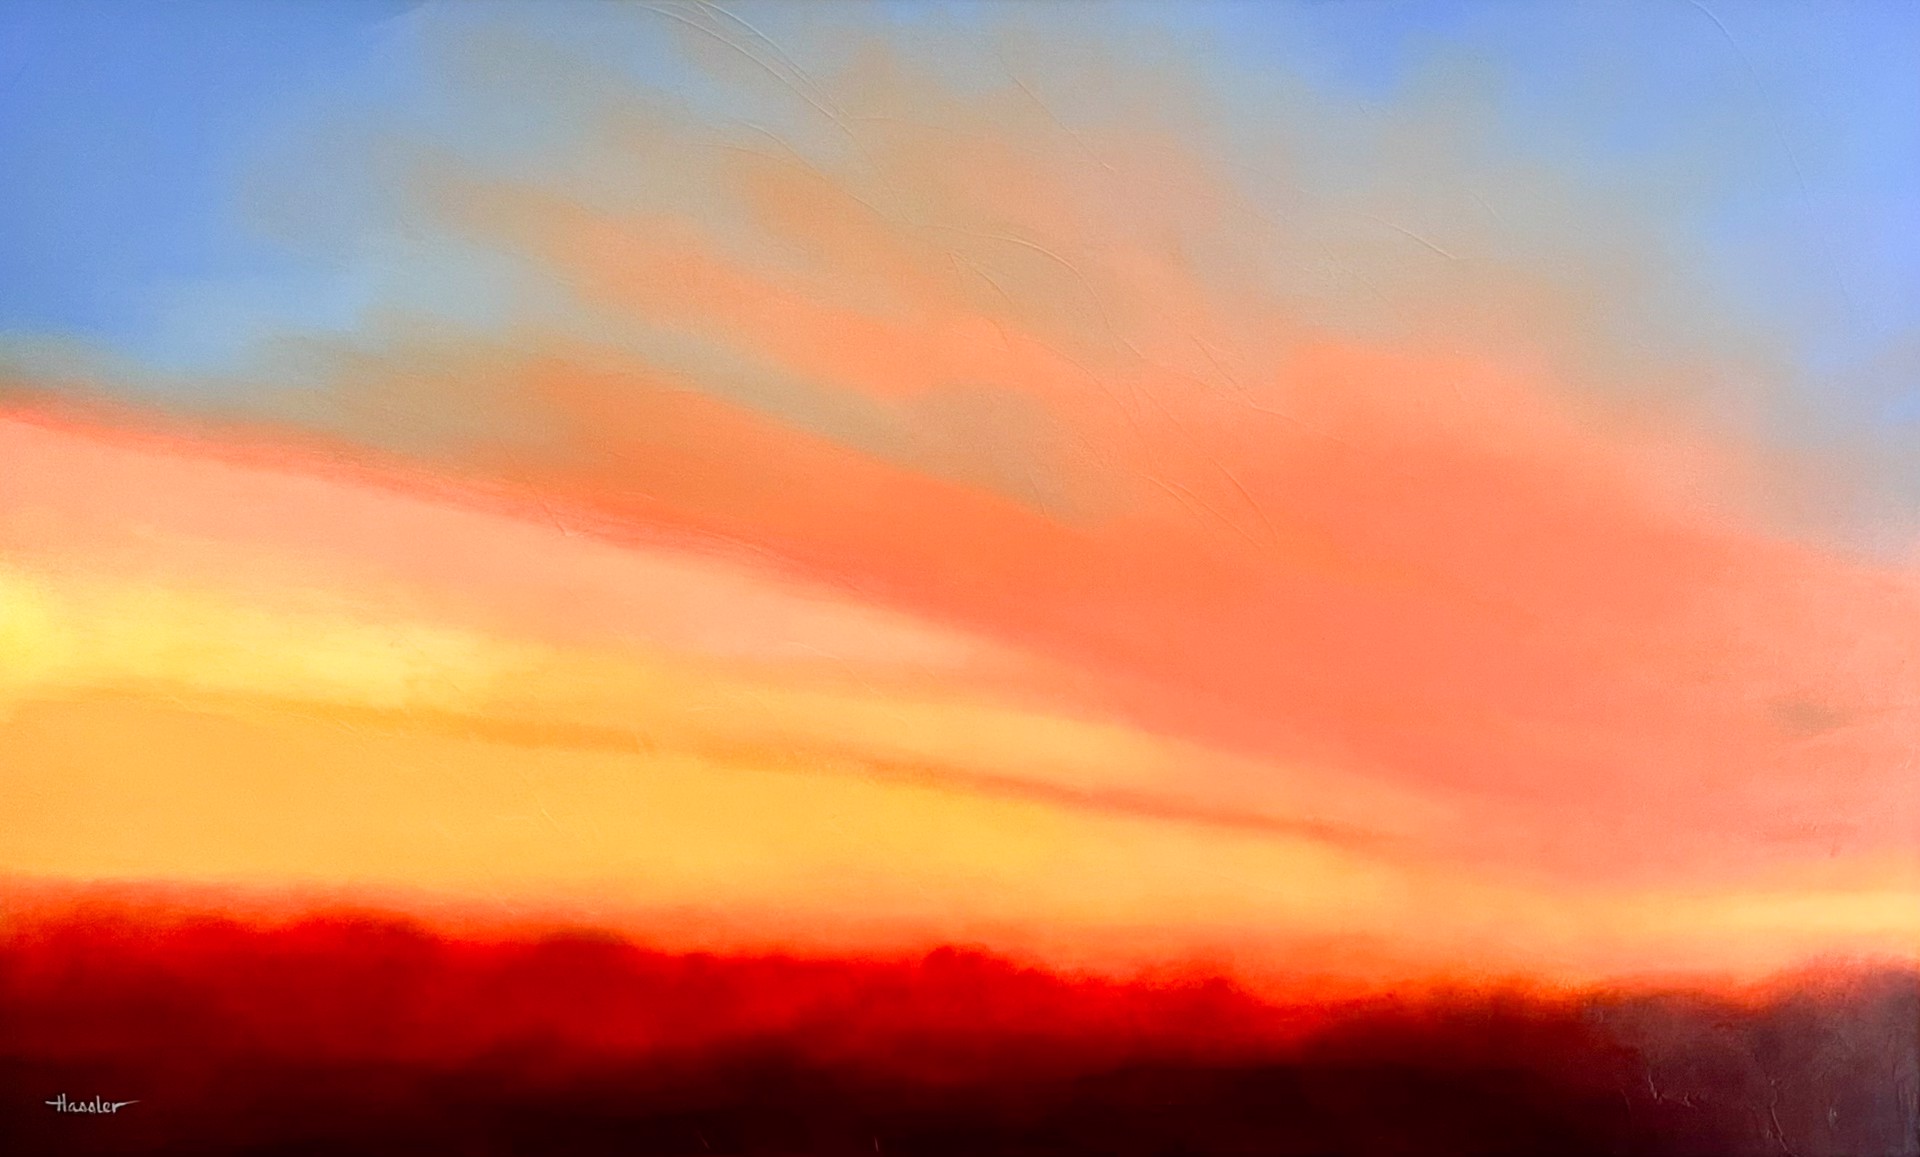 Big Sky by Pam Hassler